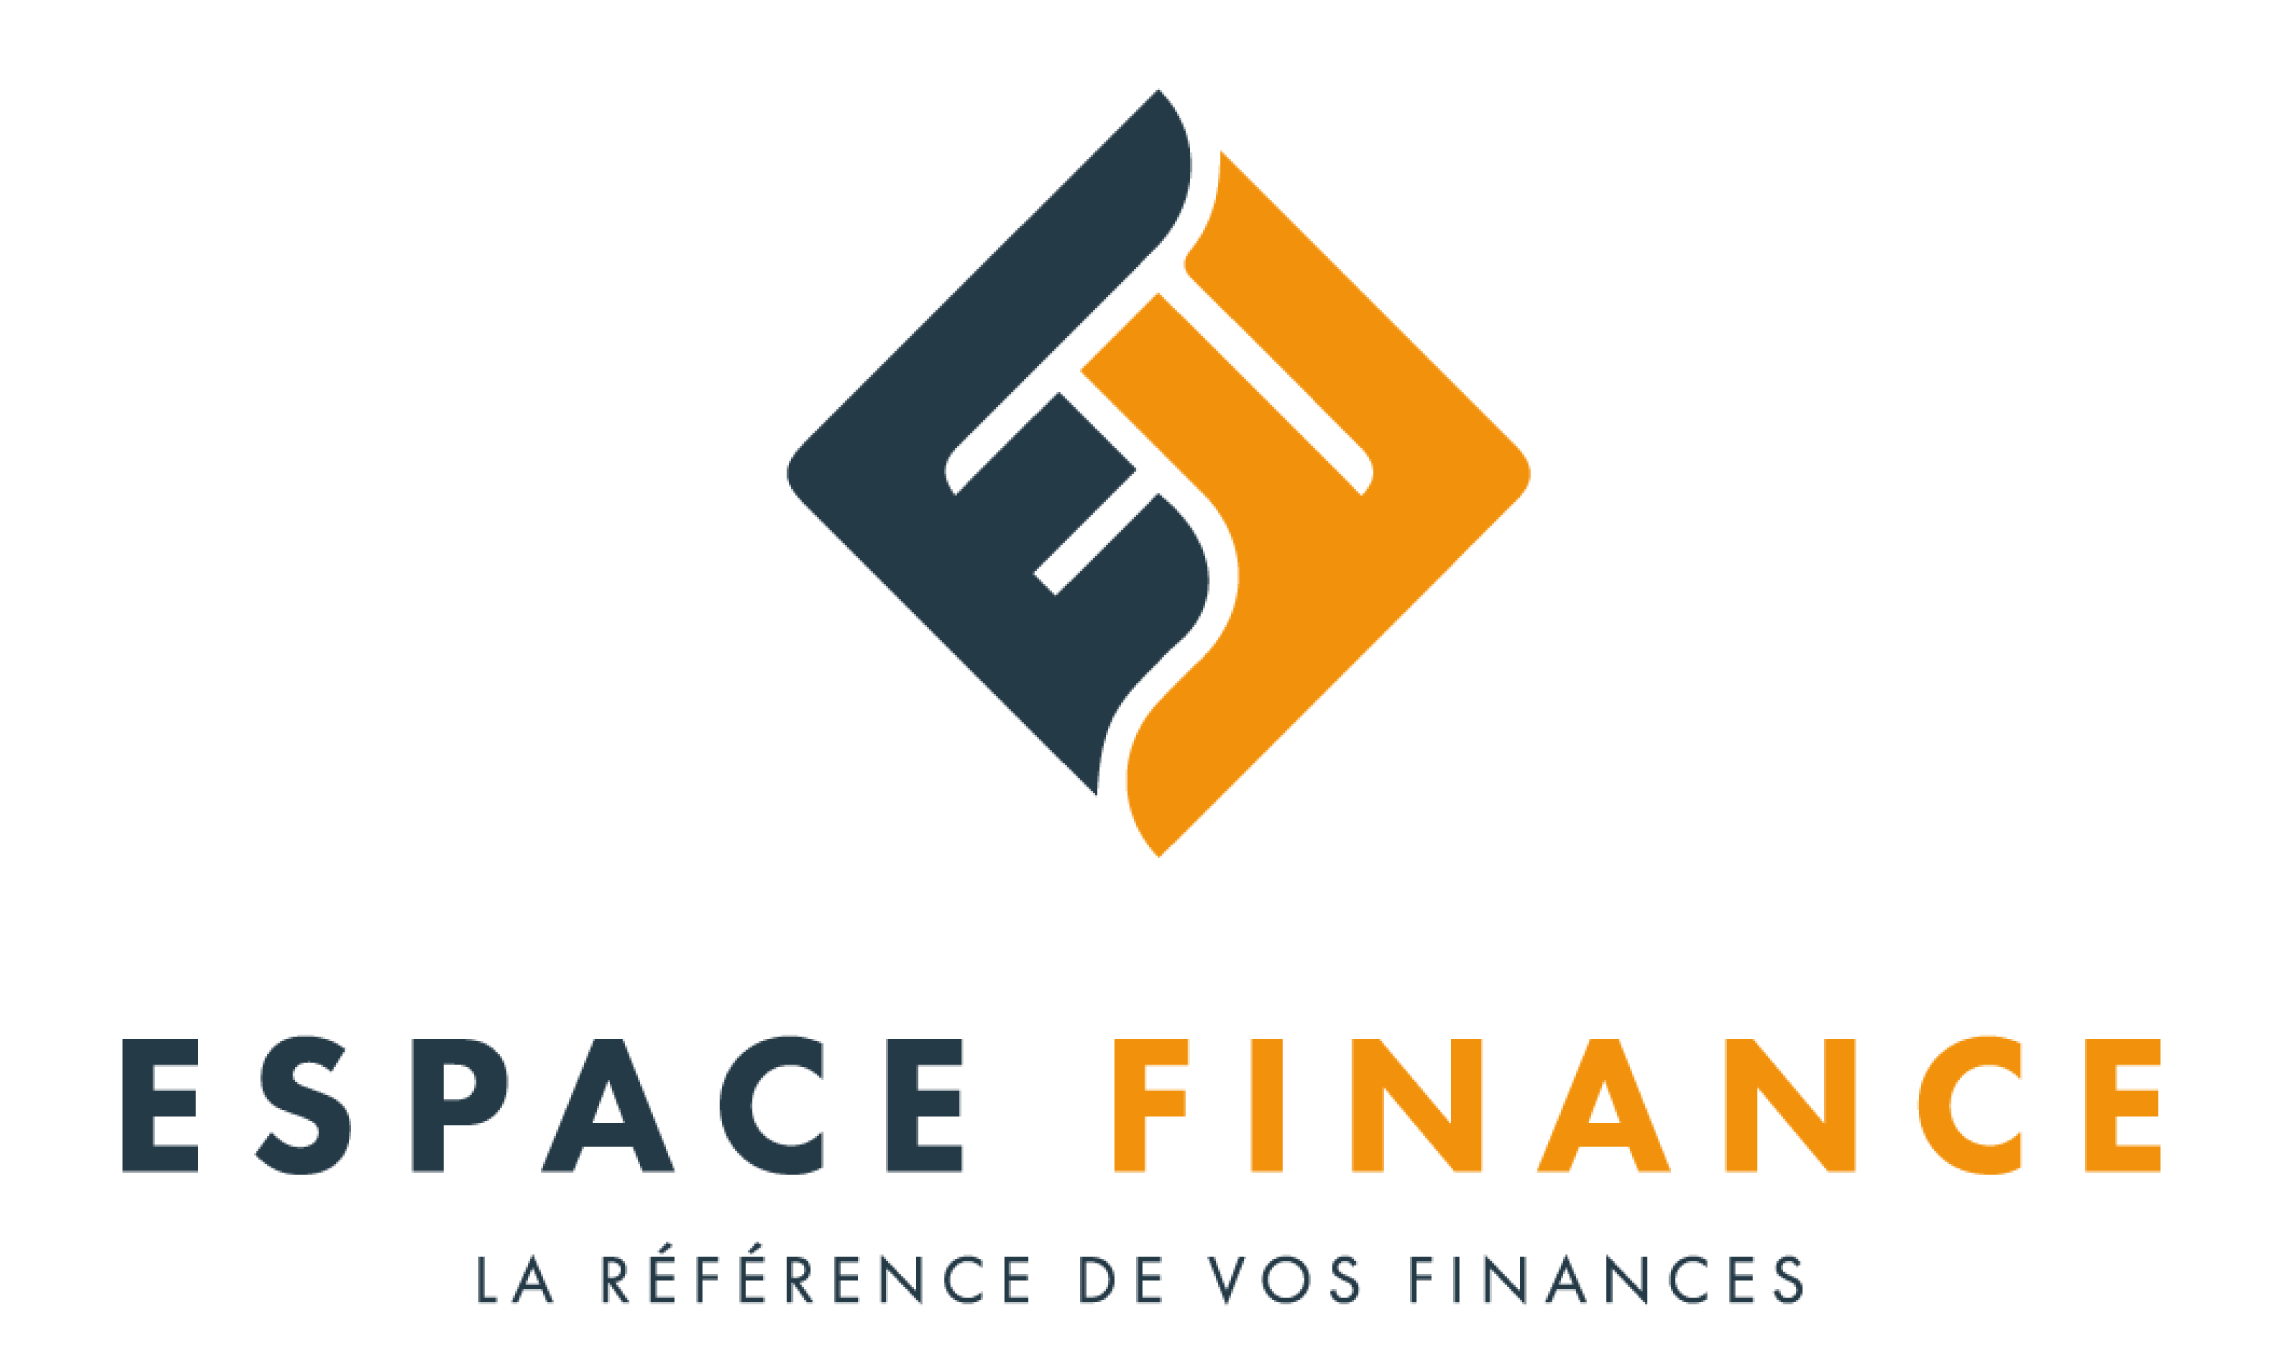 Créer un logo pour son activité professionnelle « Espace Finance ». Celui-ci doit être simple et structuré, pour être en accord avec son secteur d'activité qui inspire l'ordre et la confiance